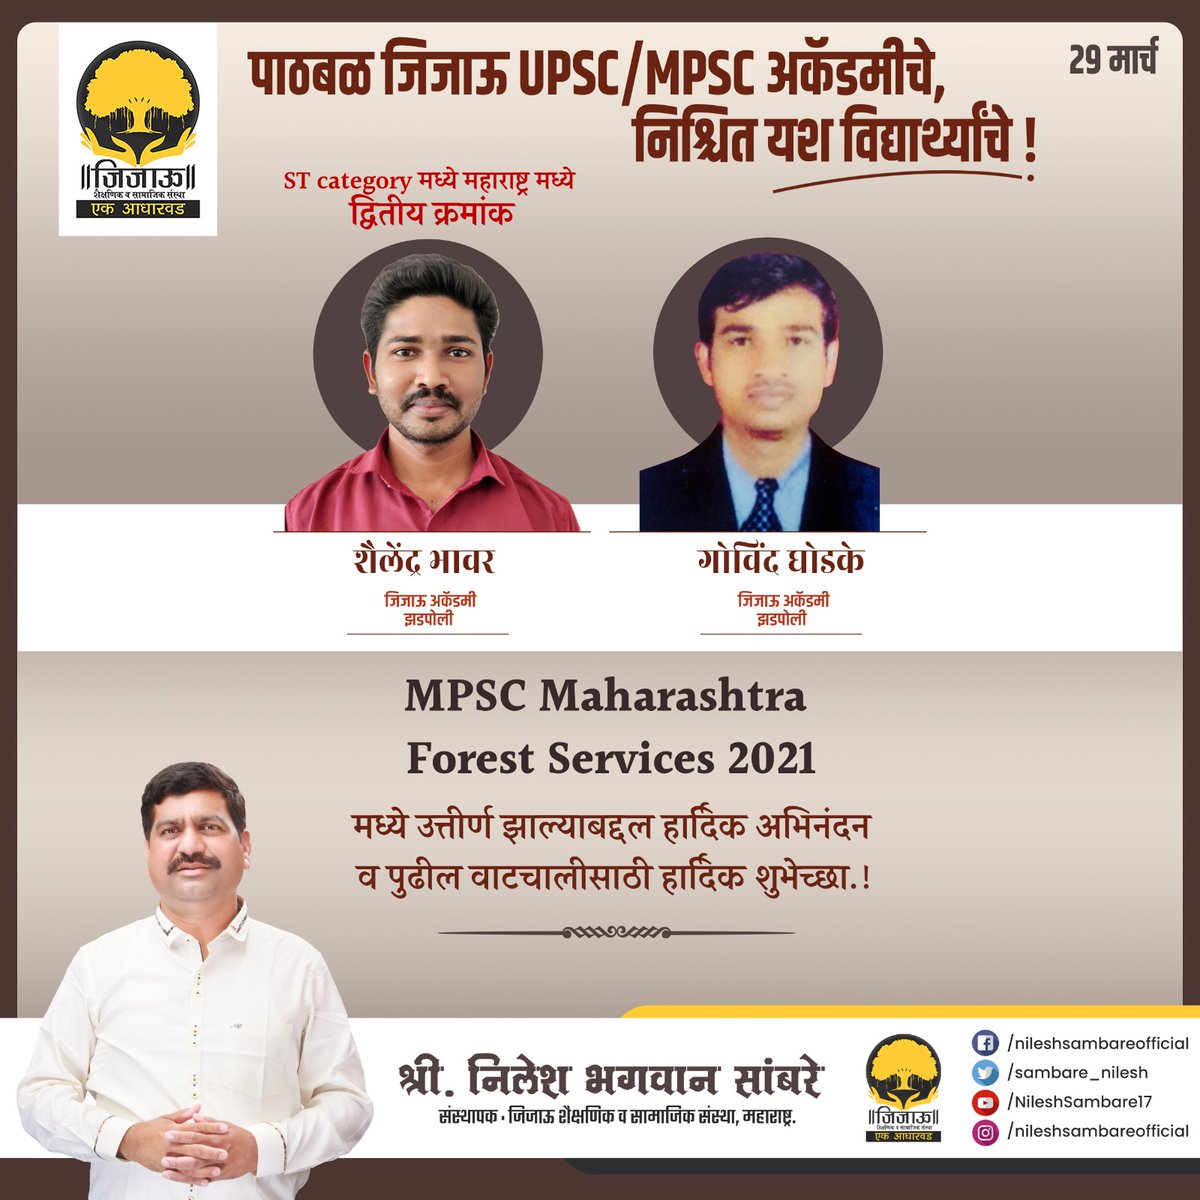 जिजाऊ मोफत UPSC/MPSCअकॅडमीच्या माध्यमातून शैलेंद्र भावर व गोविंद घोडके हे MPSC #Maharashtra Forest Services 2021 मध्ये उत्तीर्ण झाल्याबद्दल त्यांचे हार्दिक अभिनंदन व पुढील वाटचालीसाठी शुभेच्छा!
#जिजाऊसामाजिक #जिजाऊ_एक_आधारवड #निलेशसांबरे #NileshSambare #MPSC #UPSC #jijaulibrary